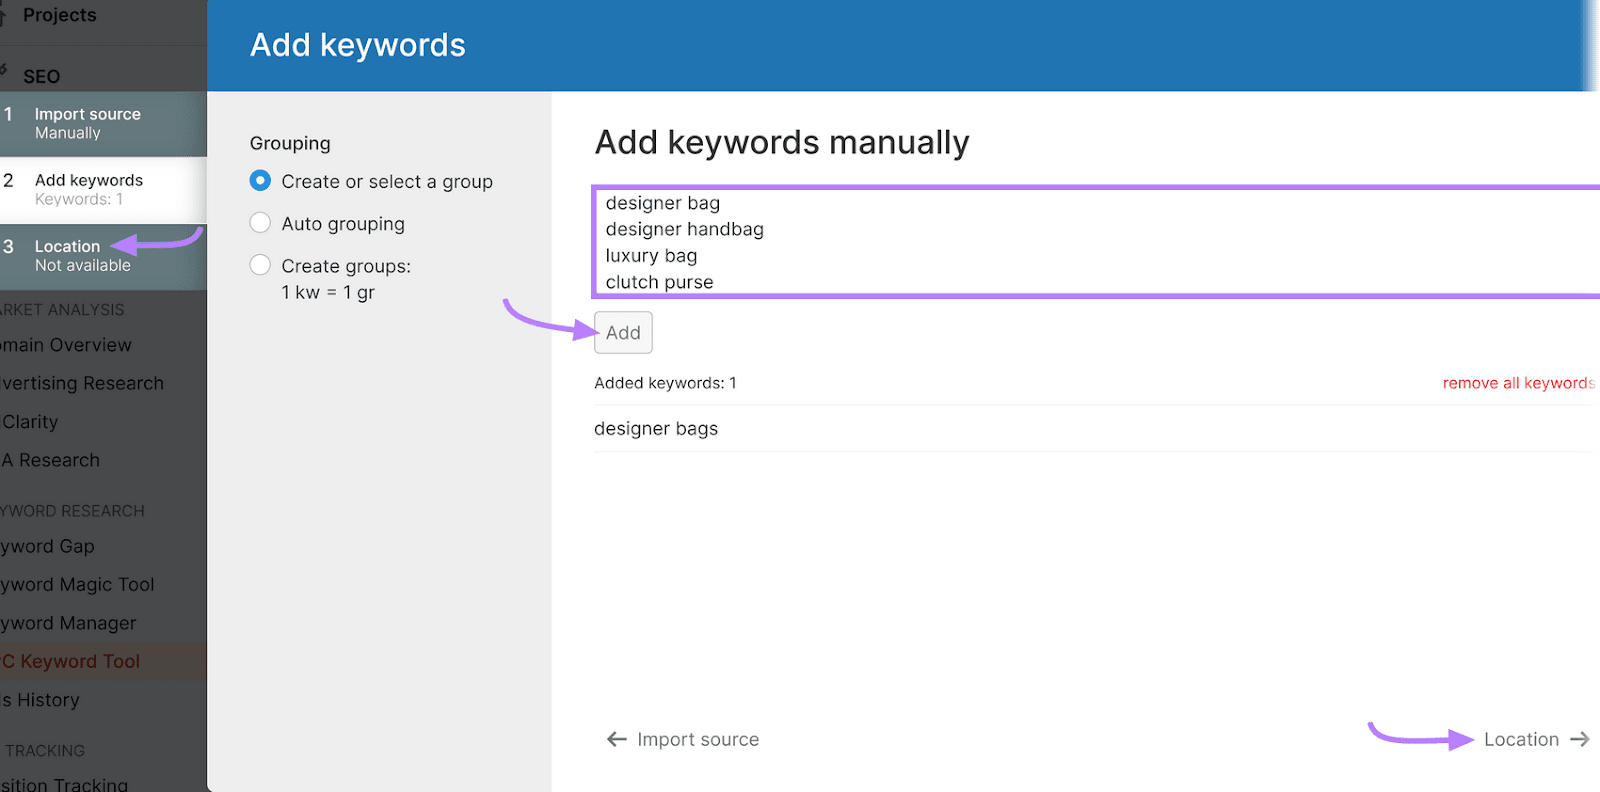 PPC Keyword Tool interface for adding keywords manually with listed keywords and navigation panel.